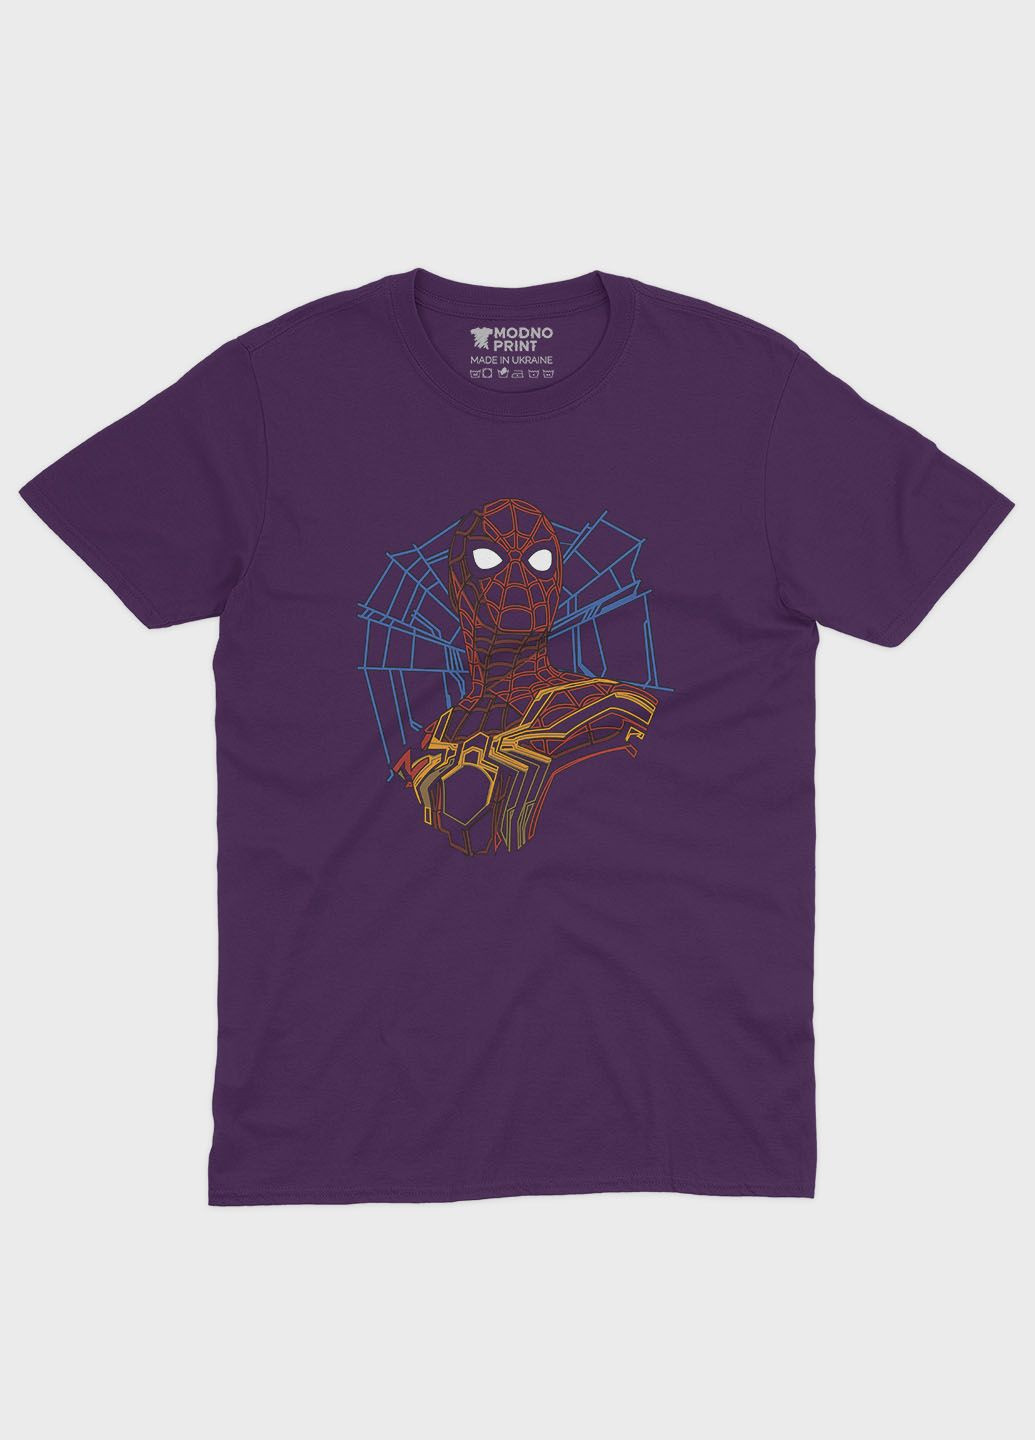 Фіолетова демісезонна футболка для дівчинки з принтом супергероя - людина-павук (ts001-1-dby-006-014-007-g) Modno